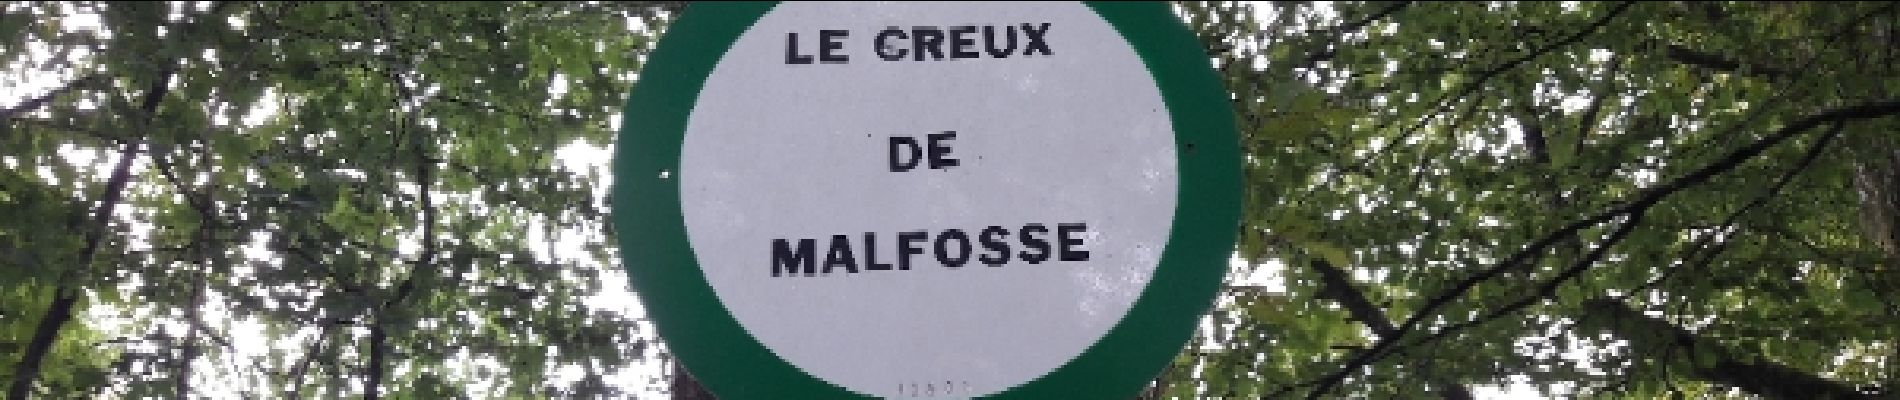 POI Badevel - Le Creux de Malefosse - Photo